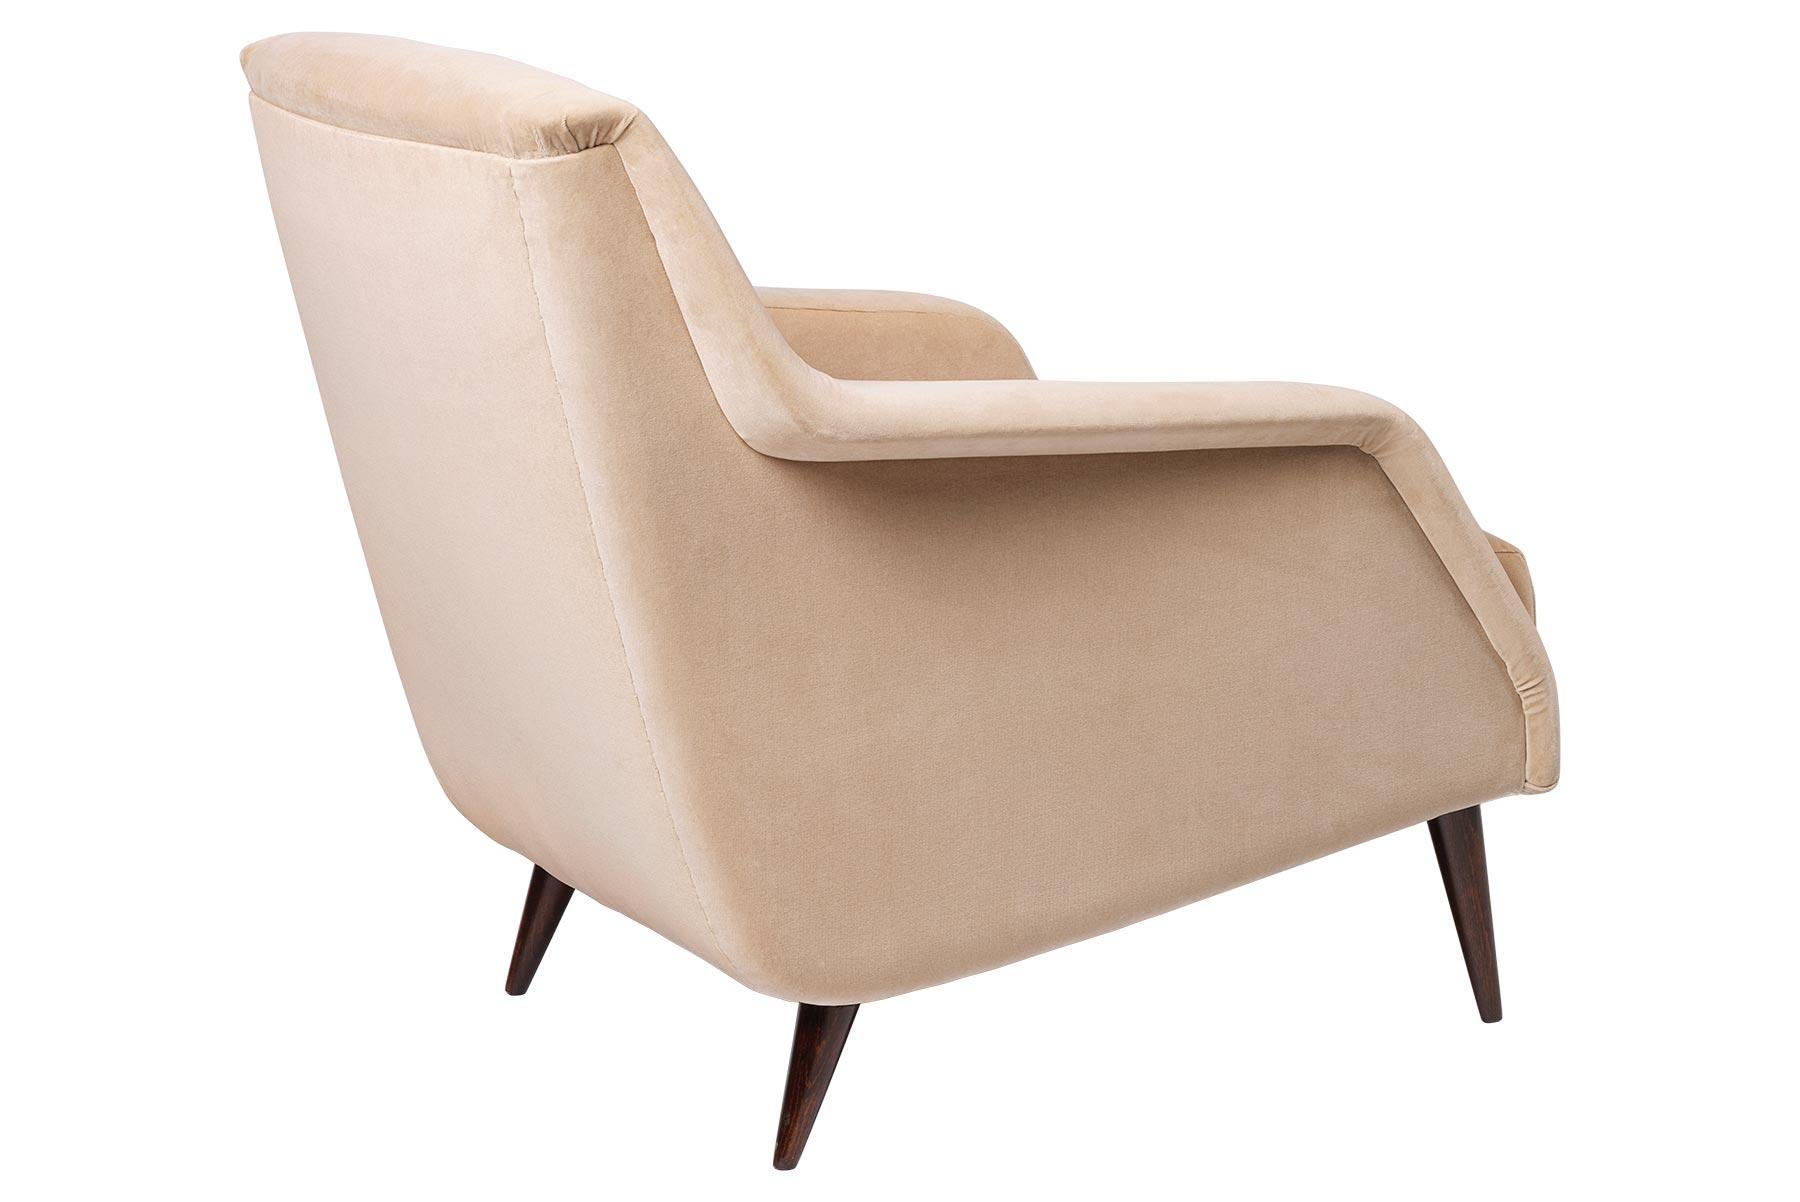 Der Sessel CDC.1 wurde 1954 von Carlo De Carli entworfen und zeichnet sich durch den für die damalige Zeit typischen eleganten, minimalistischen Designstil aus. Der CDC.1 Loungesessel ist anmutig und schlank, seine Arme schwingen wie Flügel und